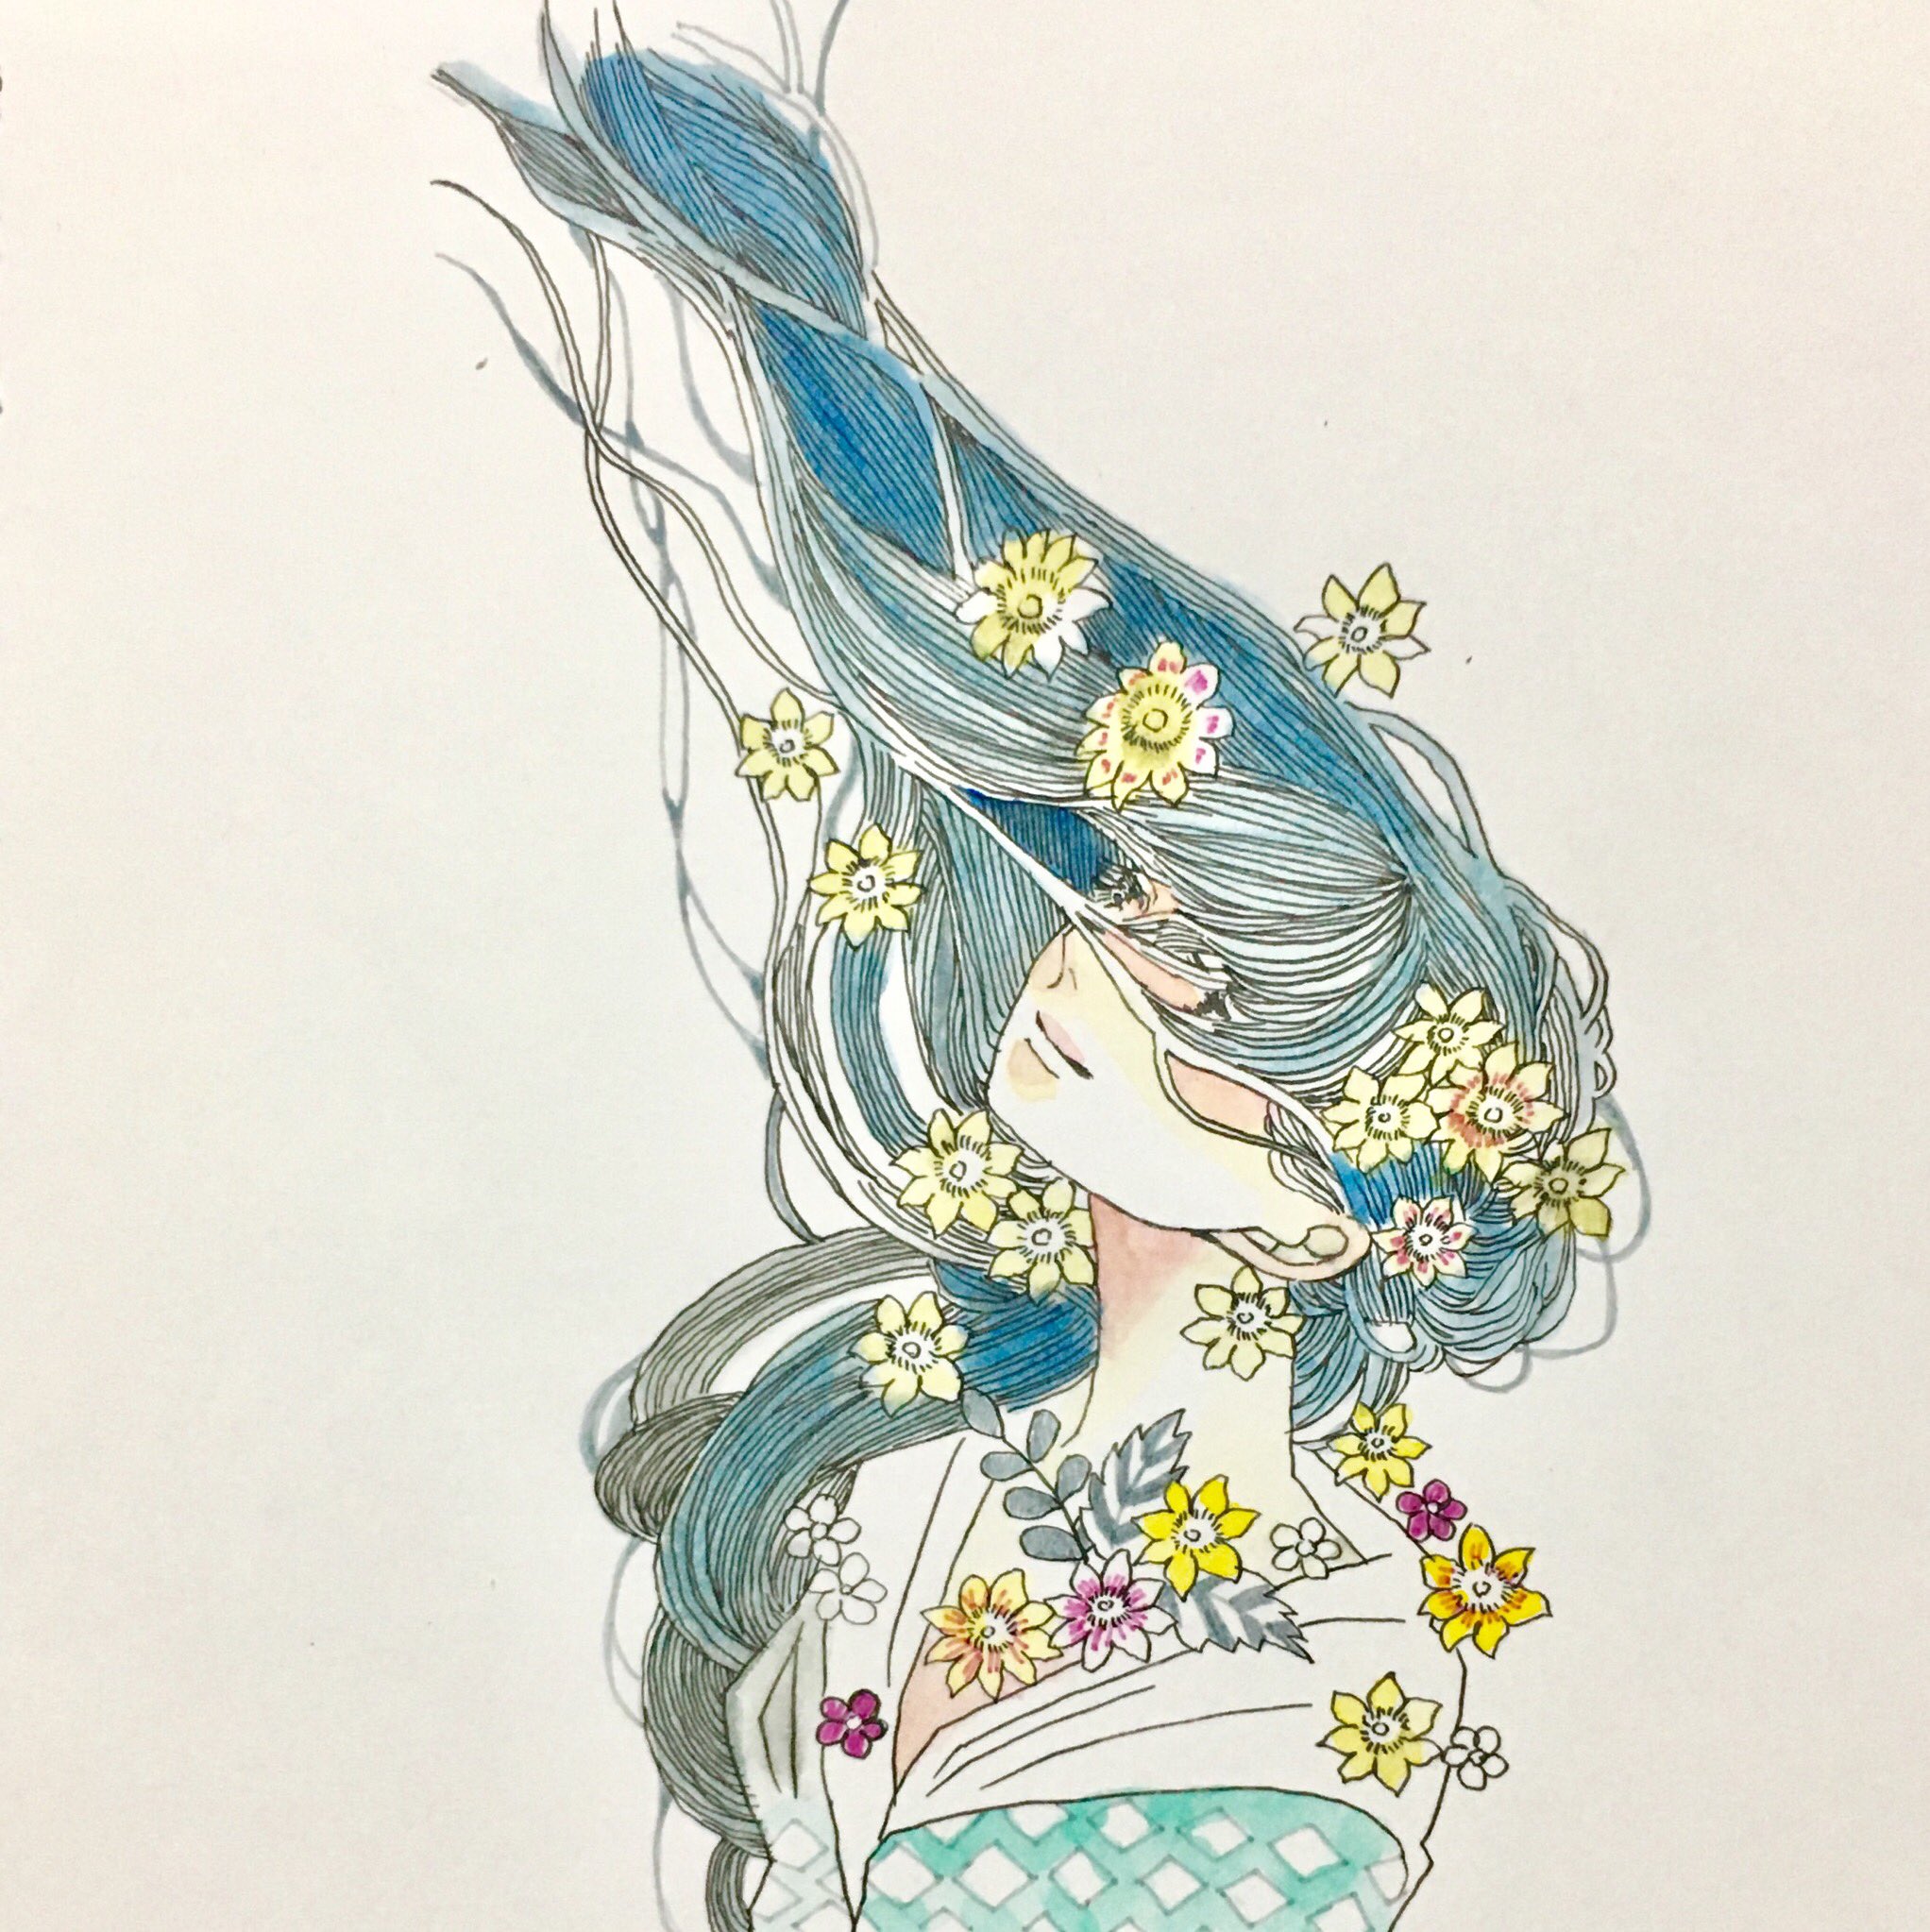 さざはら 充電中 カラー難しい 有名になりたい Drawing 花 Flower イラスト王国 イラストレーター T Co Spybxsy0jo Twitter